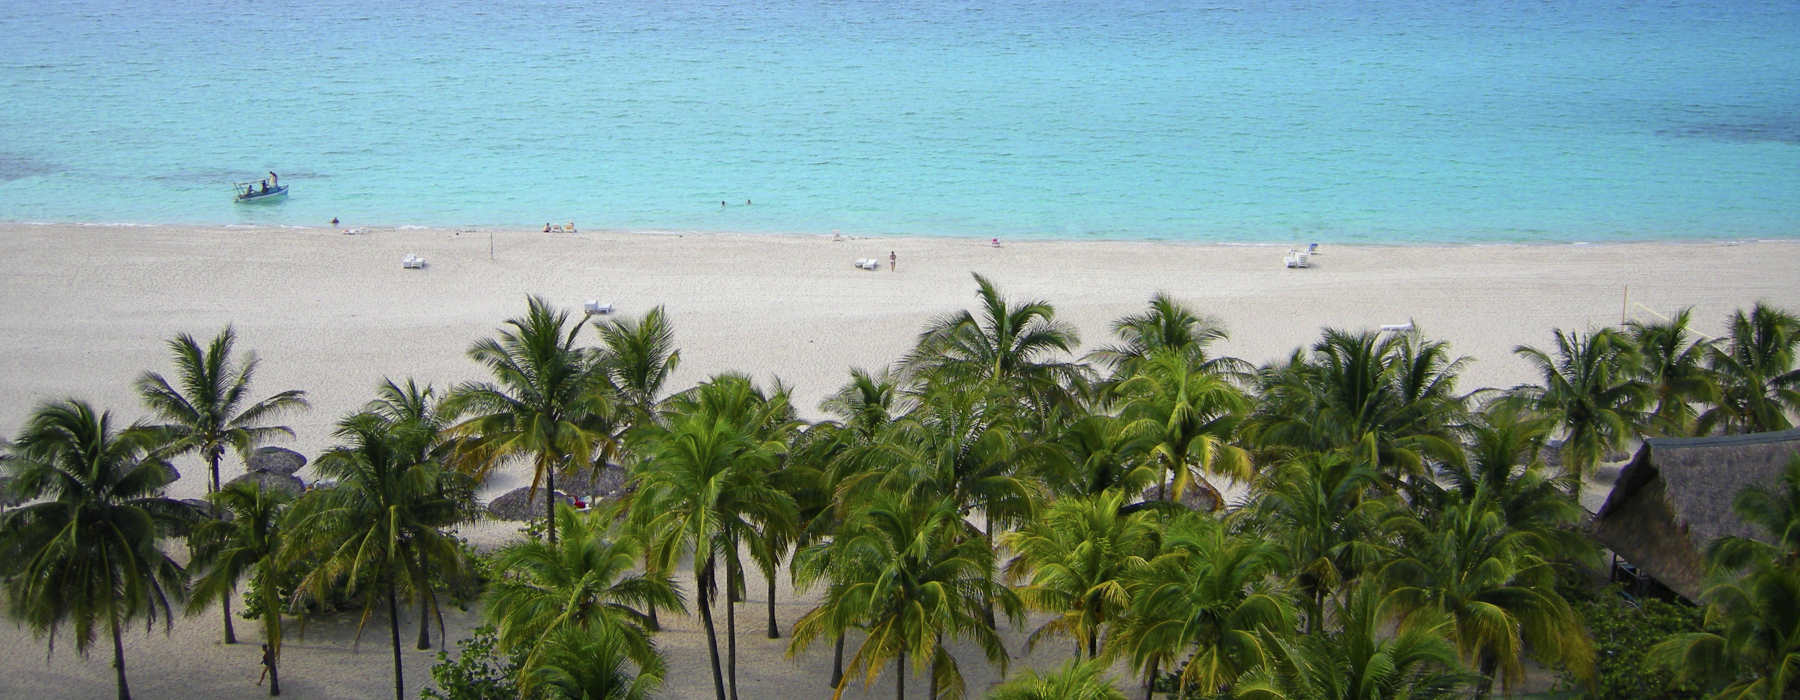 Cuba Beaches<br class="hidden-md hidden-lg" /> Holidays